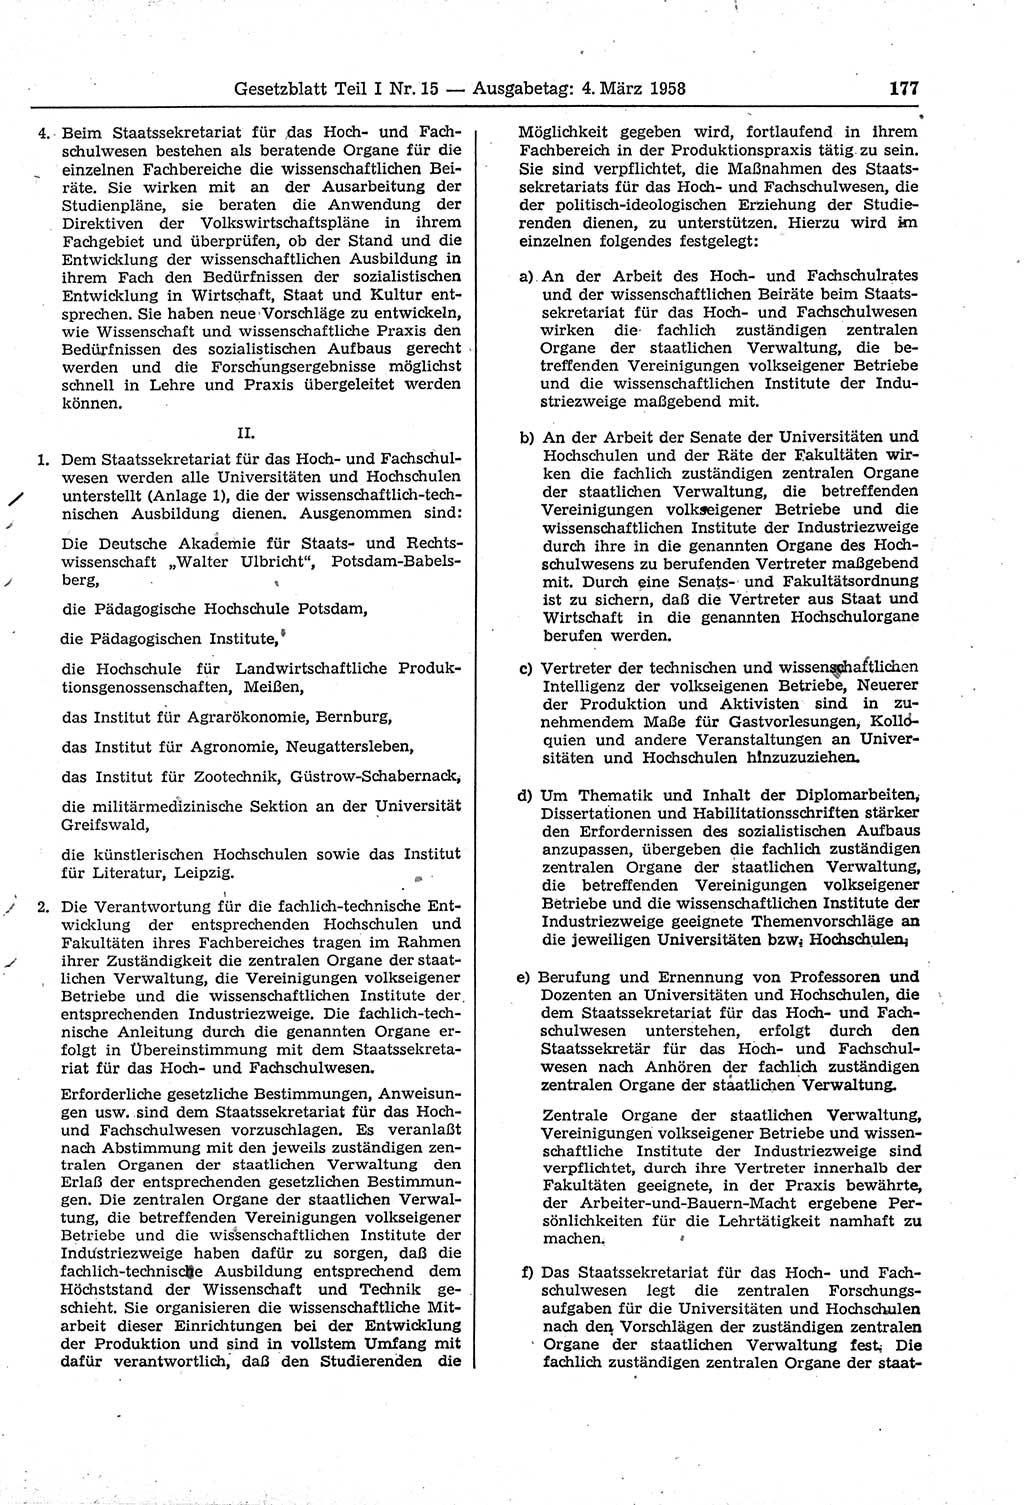 Gesetzblatt (GBl.) der Deutschen Demokratischen Republik (DDR) Teil Ⅰ 1958, Seite 177 (GBl. DDR Ⅰ 1958, S. 177)